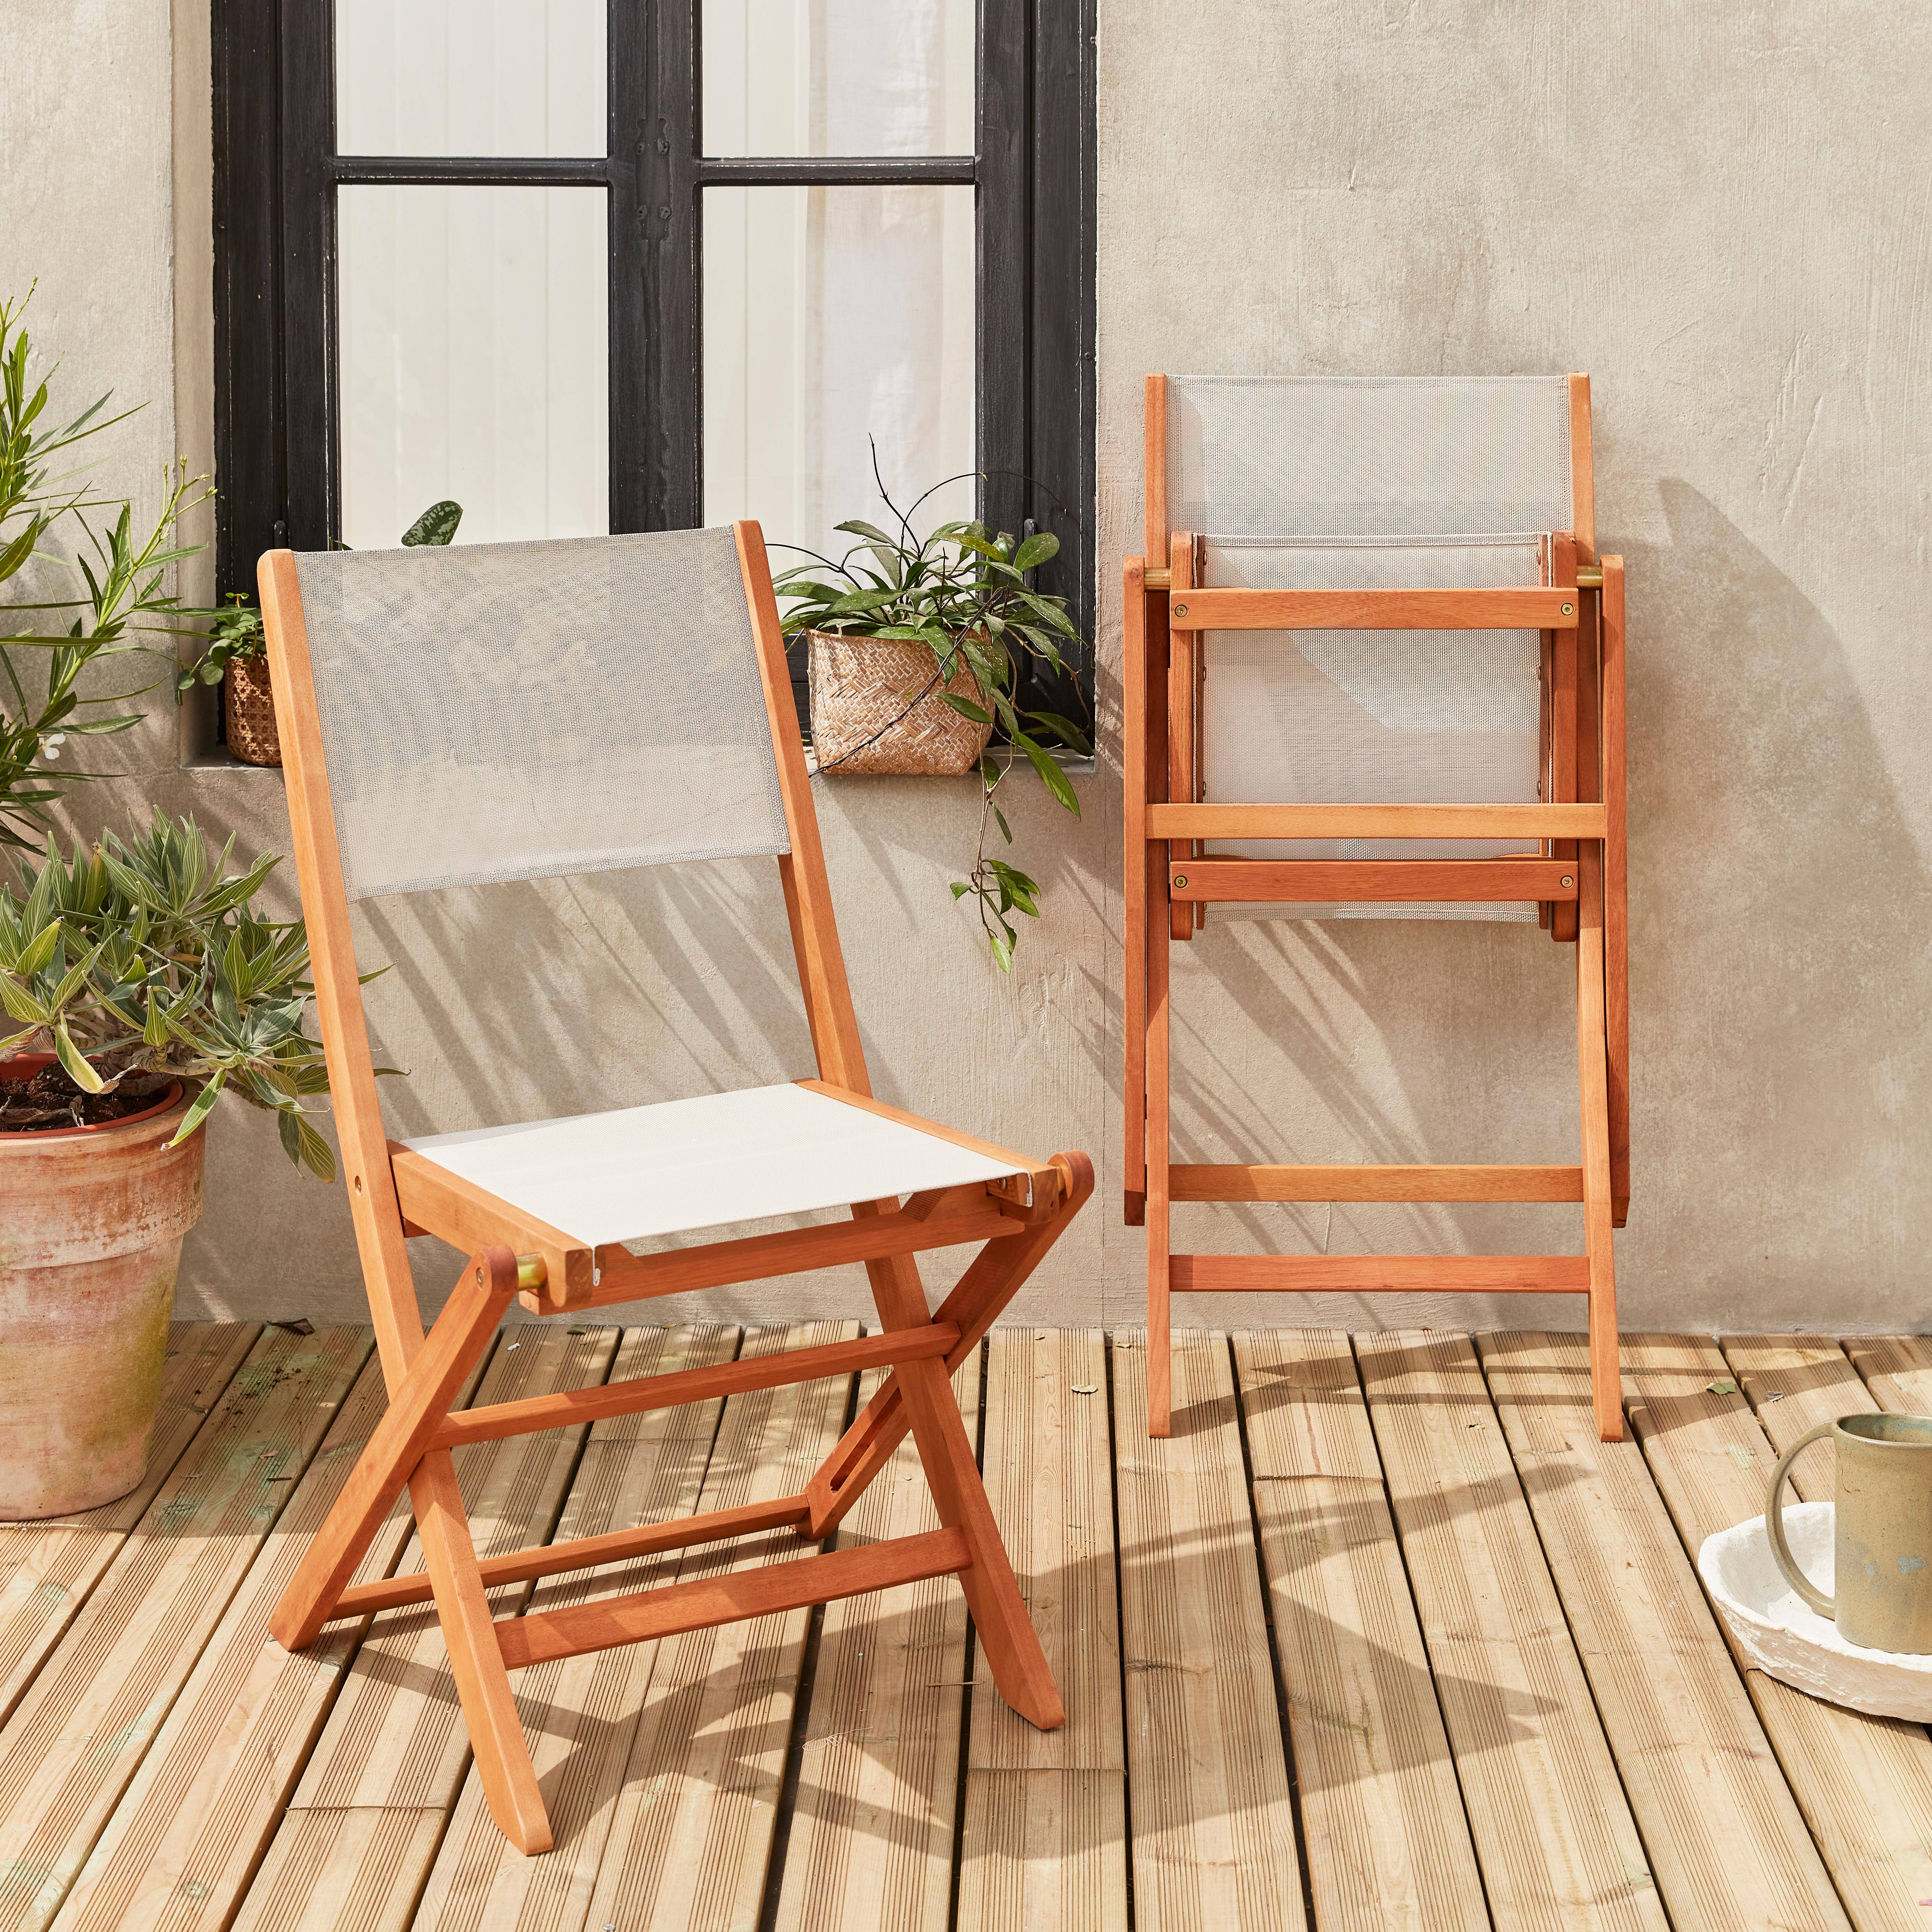 Sedie da giardino, in legno e textilene - modello: Almeria, colore: Bianco - 2 sedie pieghevoli in legno di eucalipto FSC oliato e textilene,sweeek,Photo2